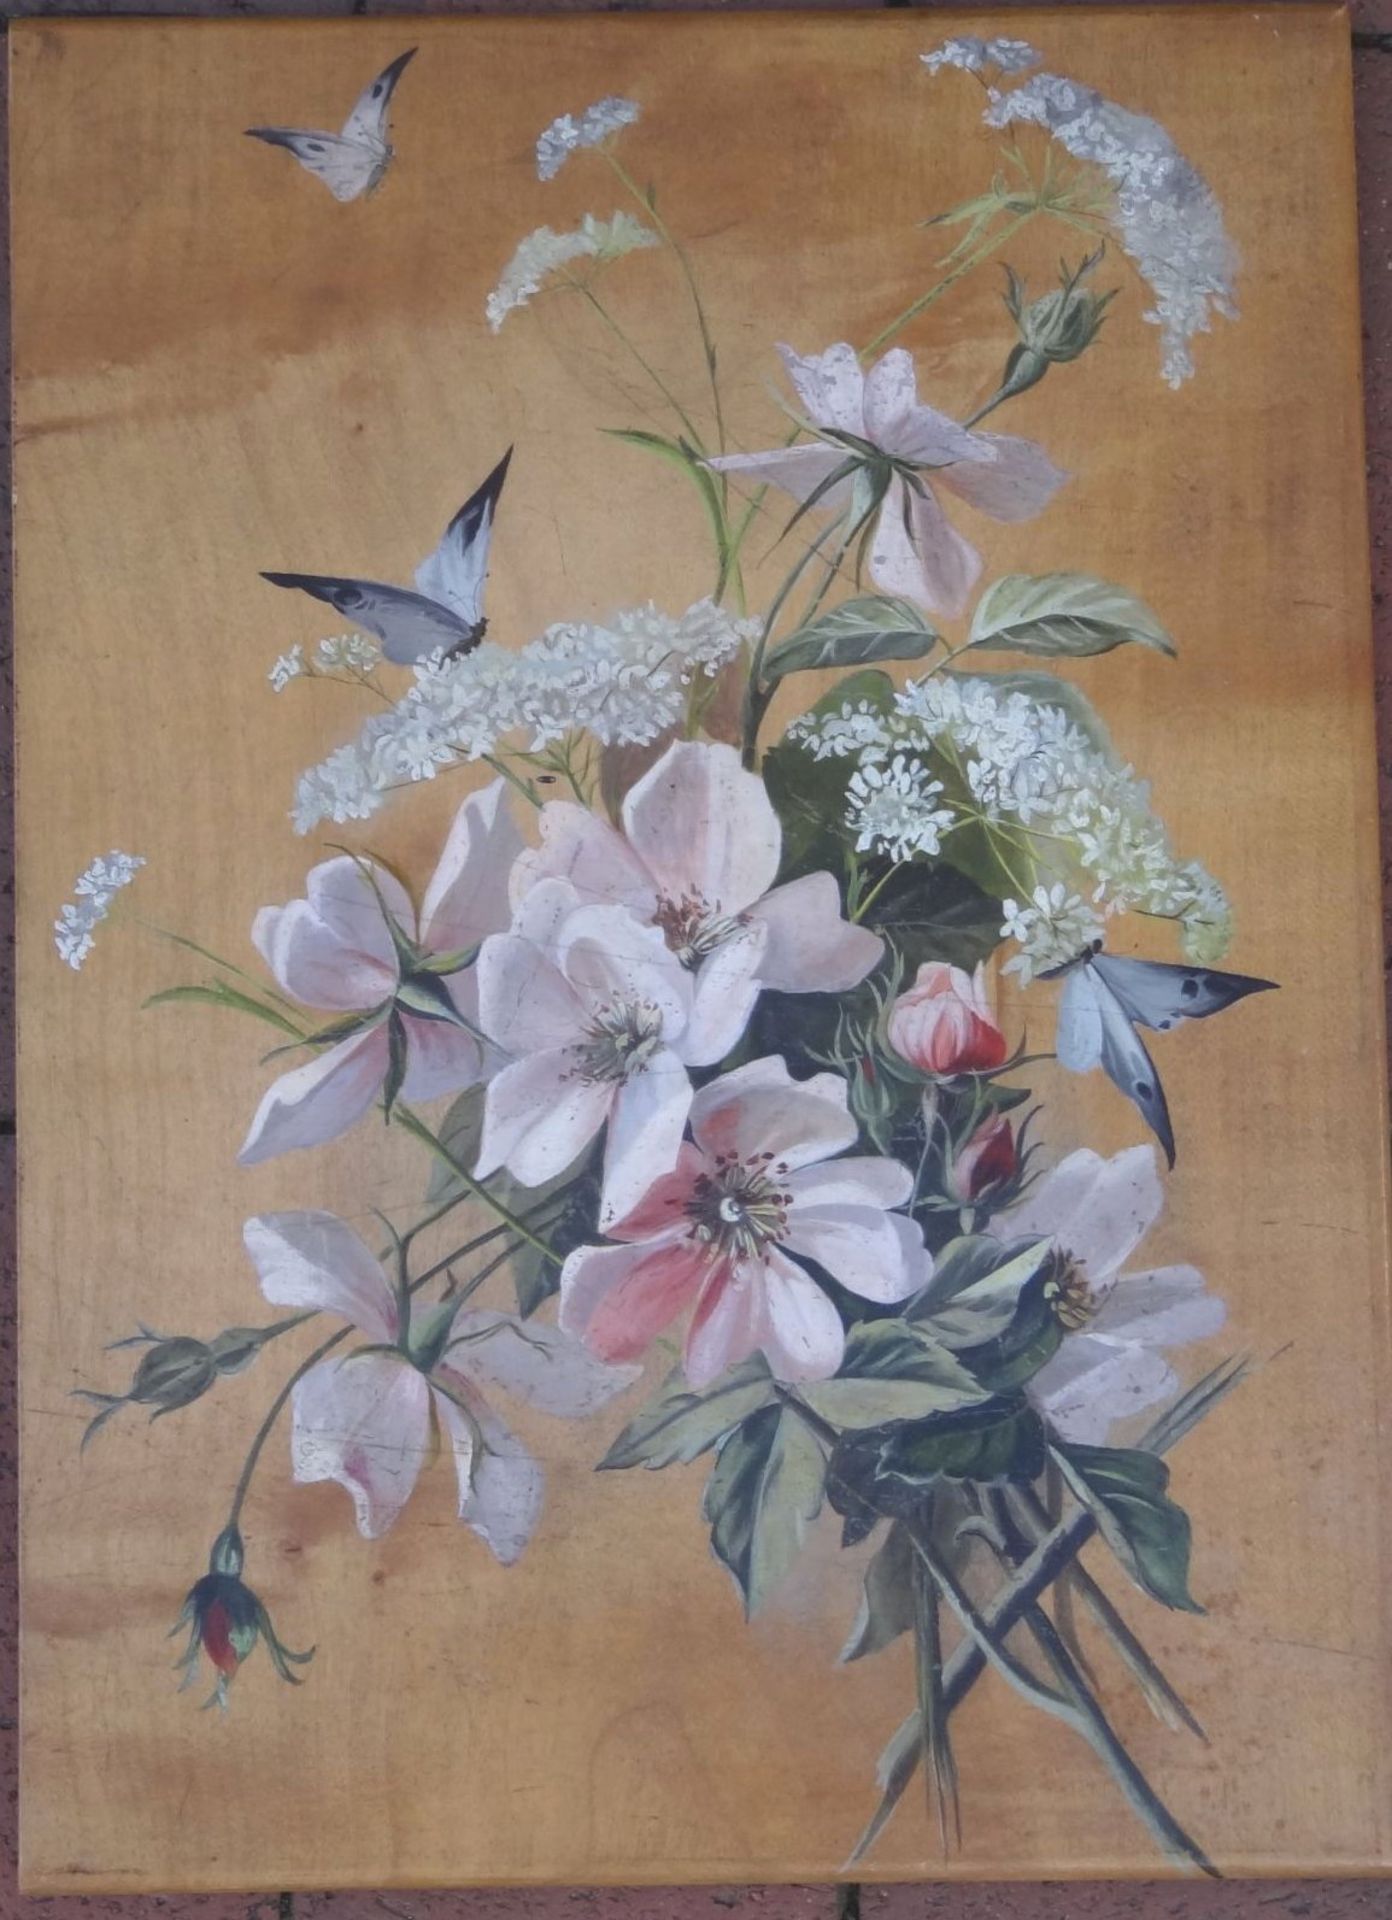 anonymes Blumengemälde mit Vögel auf Holzplatte, 37x26 cm- - -22.61 % buyer's premium on the